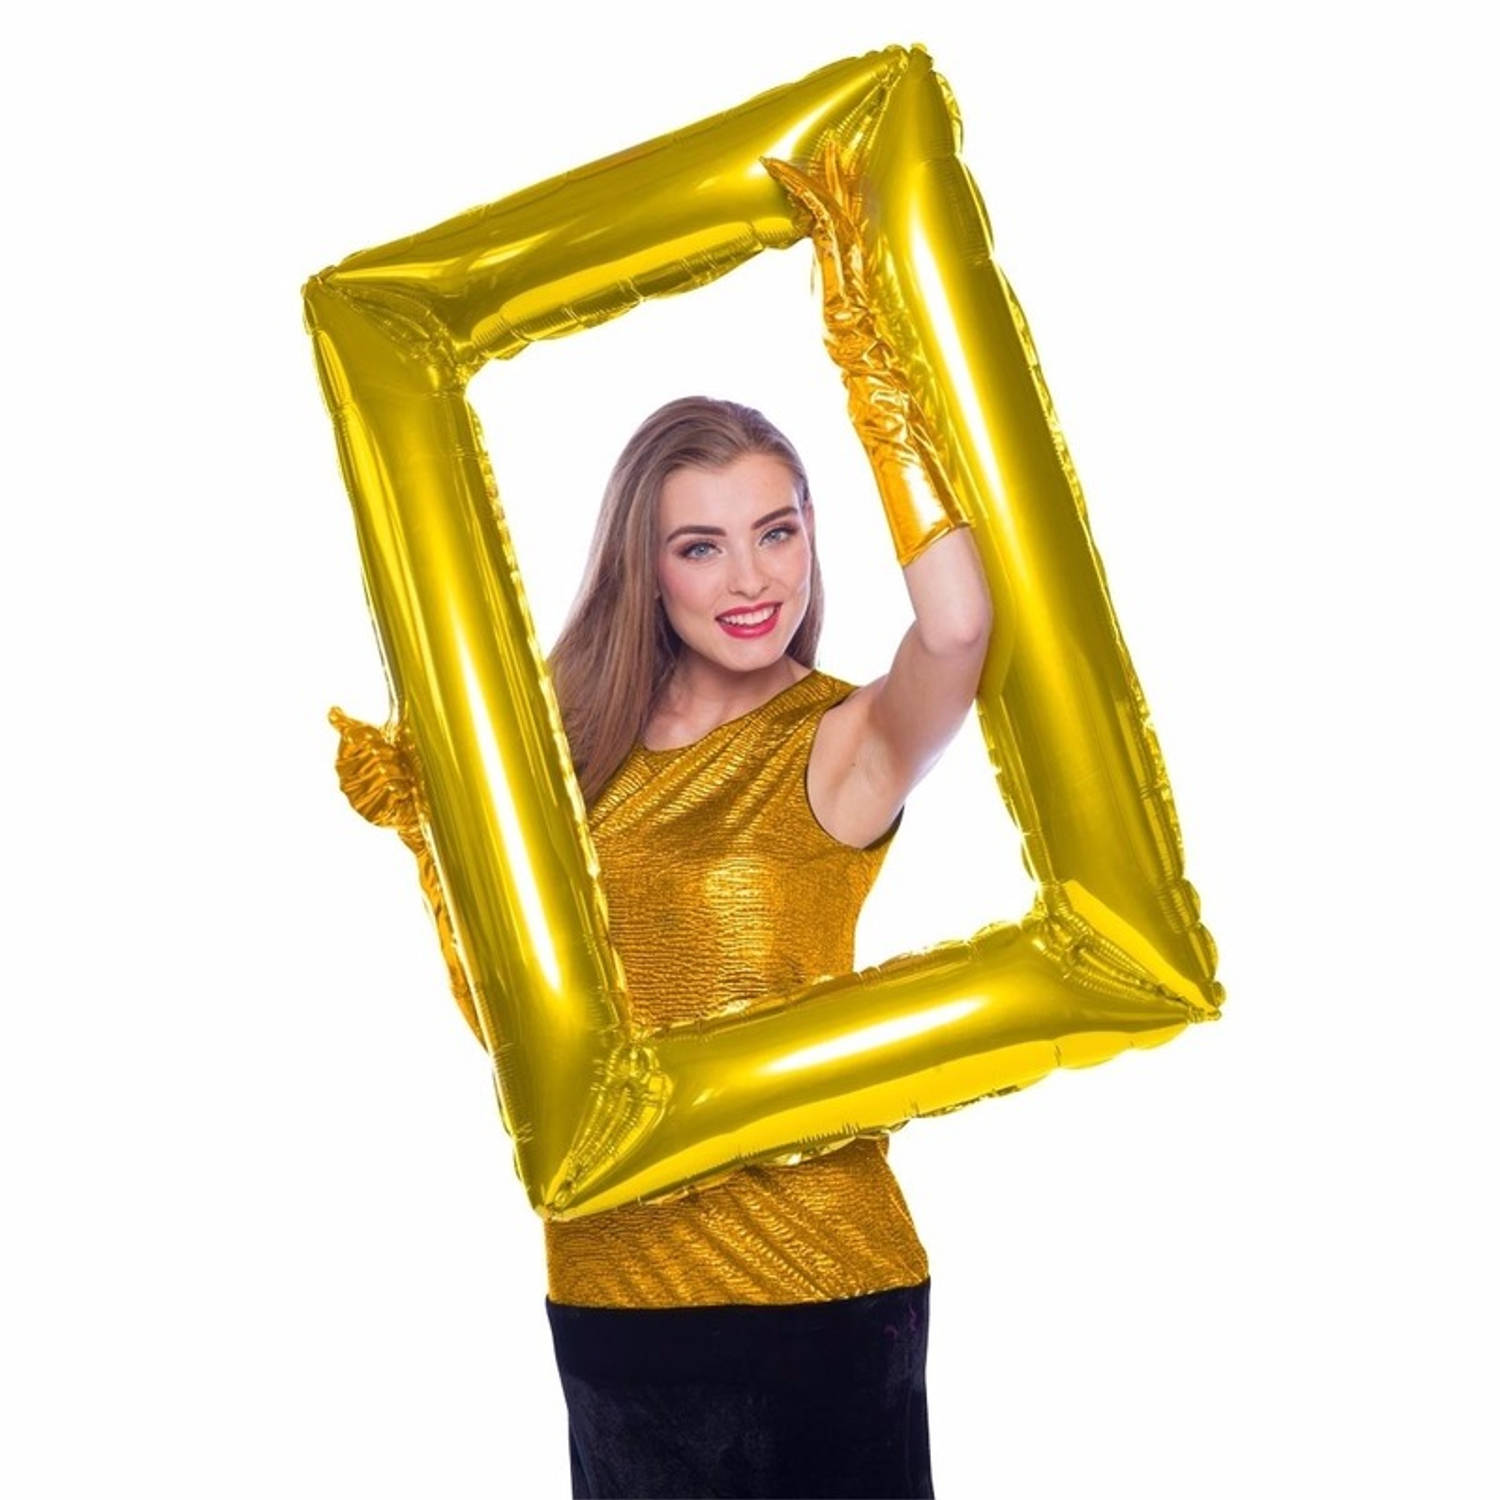 Folie foto frame rechthoek goud 85 x 60 cm - Ballonnen